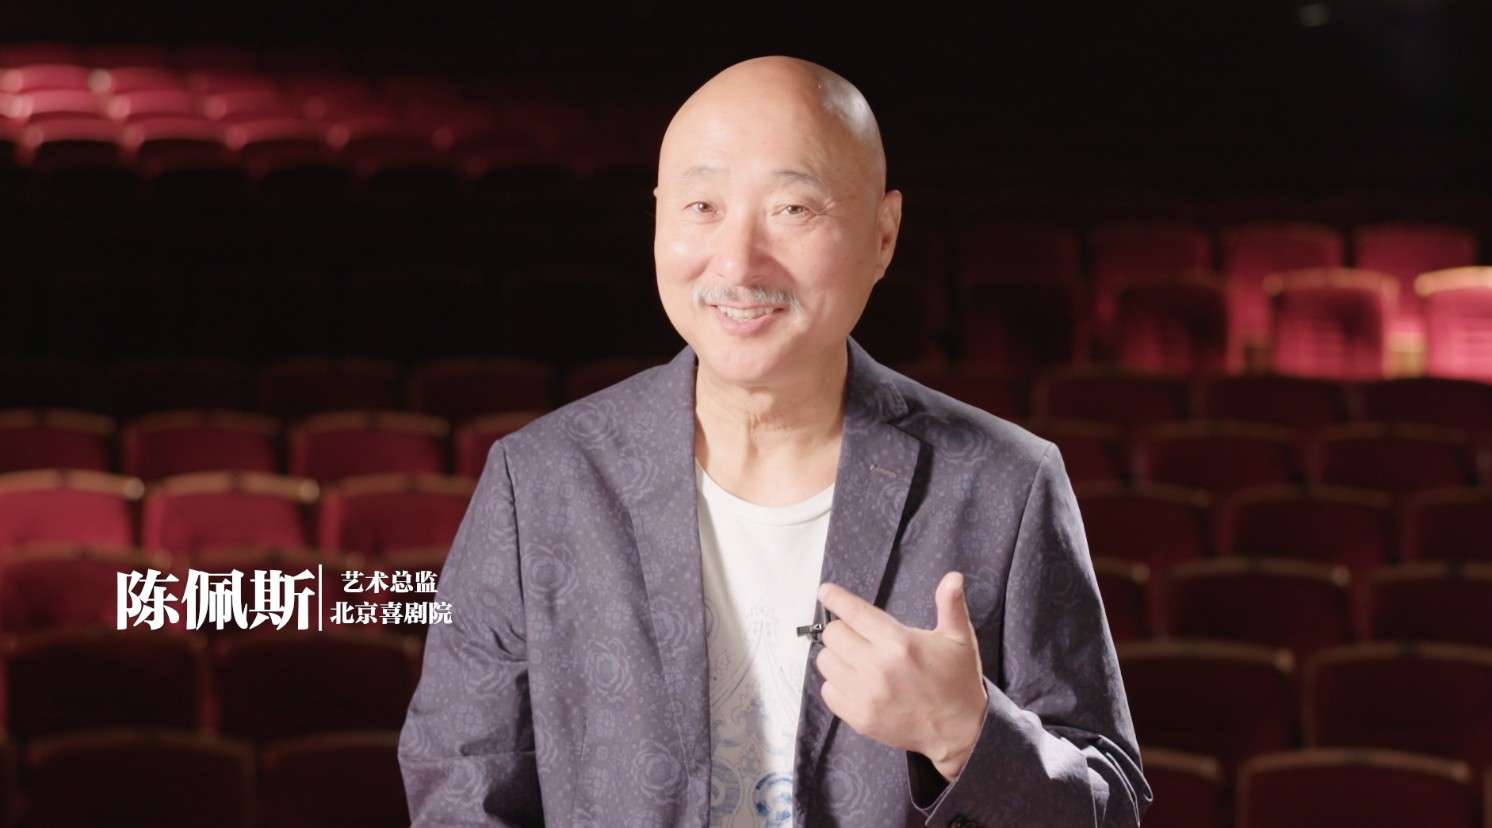 北京喜剧院开幕二周年宣传片